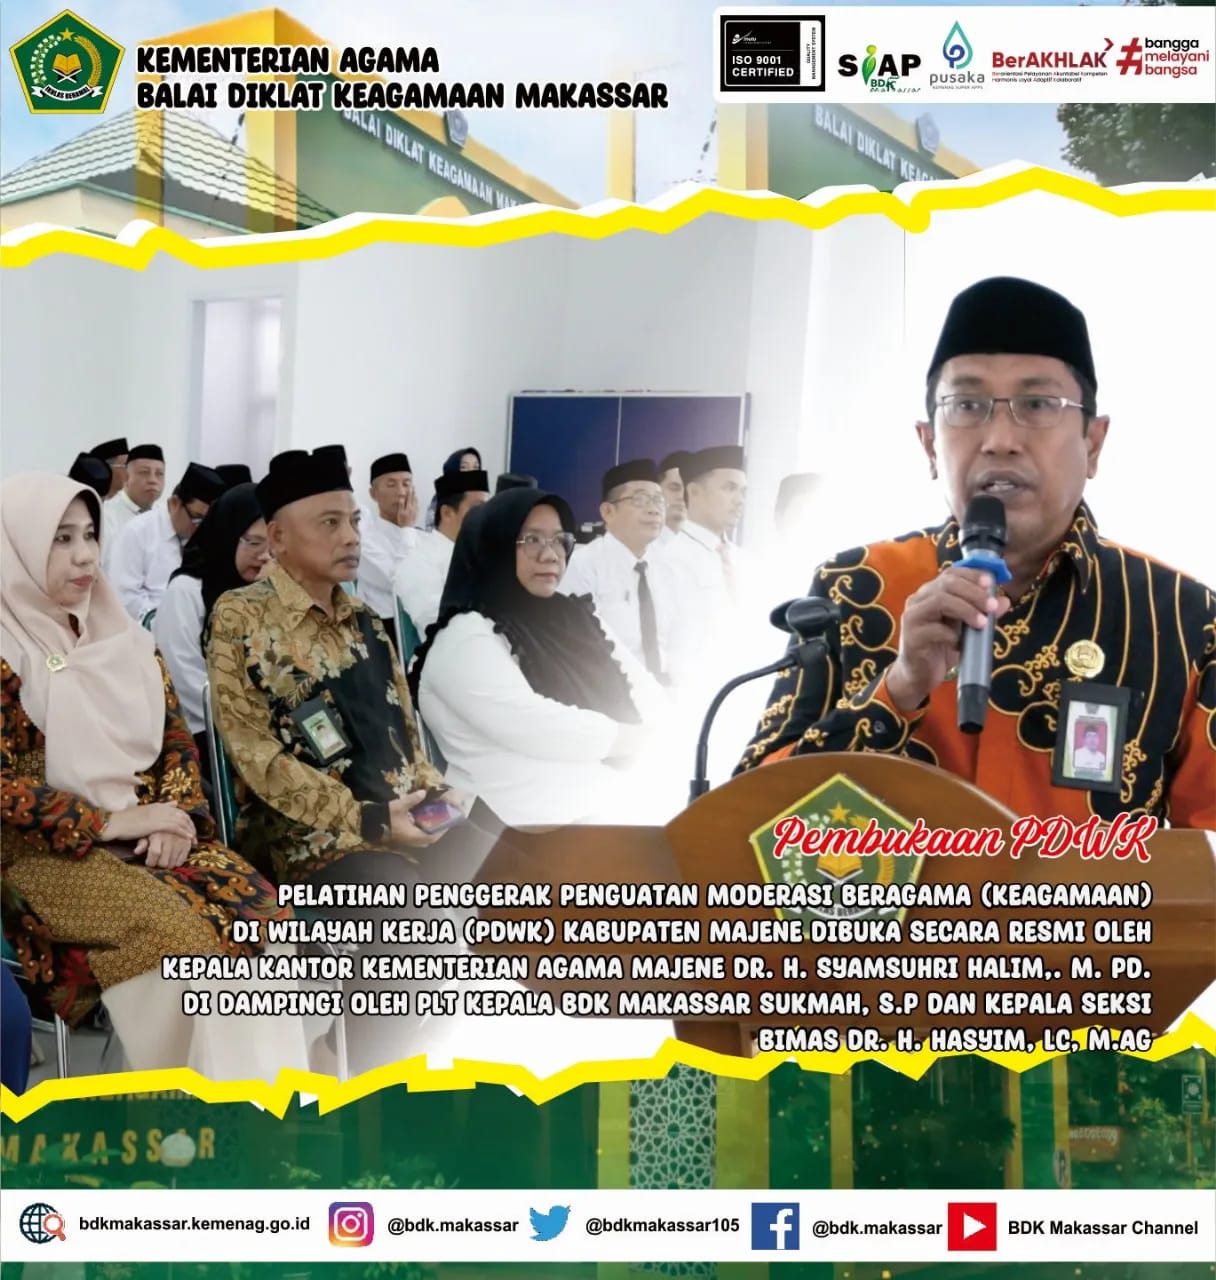 BDK Makassar gelar PDWK Penggerak Penguatan Moderasi Beragama di Kab. Majene